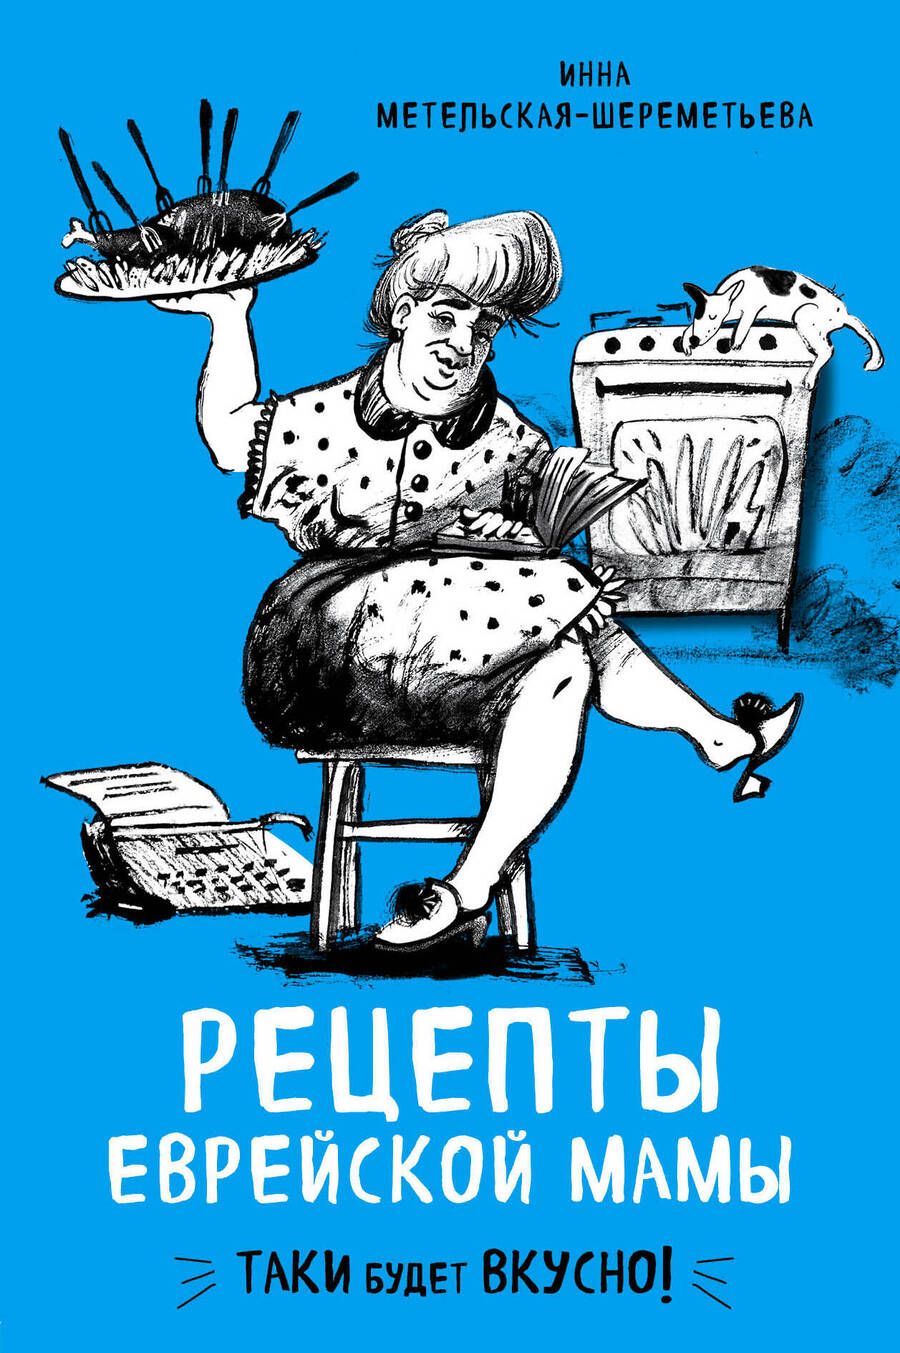 Обложка книги "Инна Метельская-Шереметьева: Рецепты еврейской мамы"